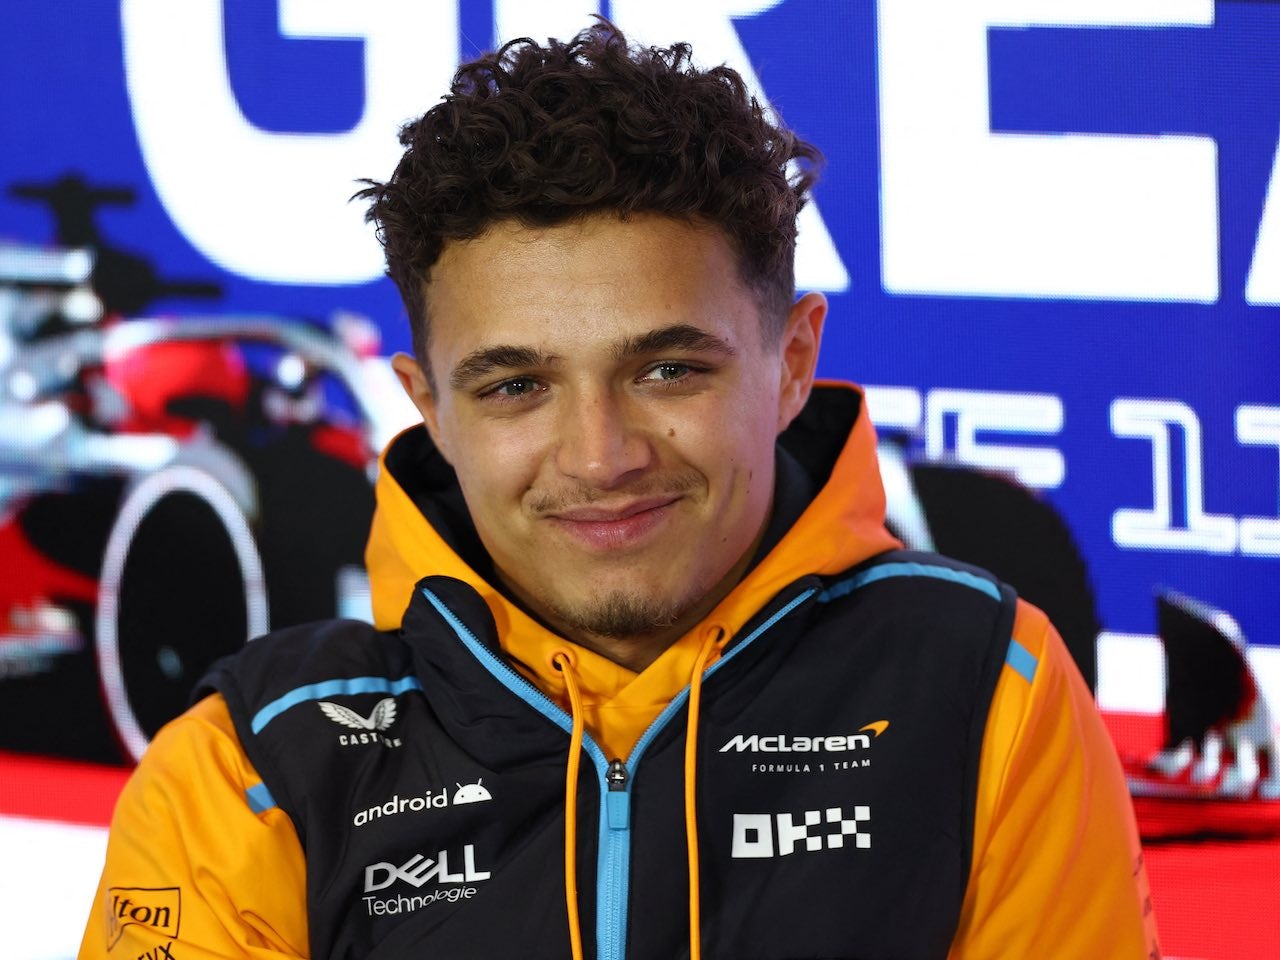 'B' McLaren still has 'terrible' weakness - Norris